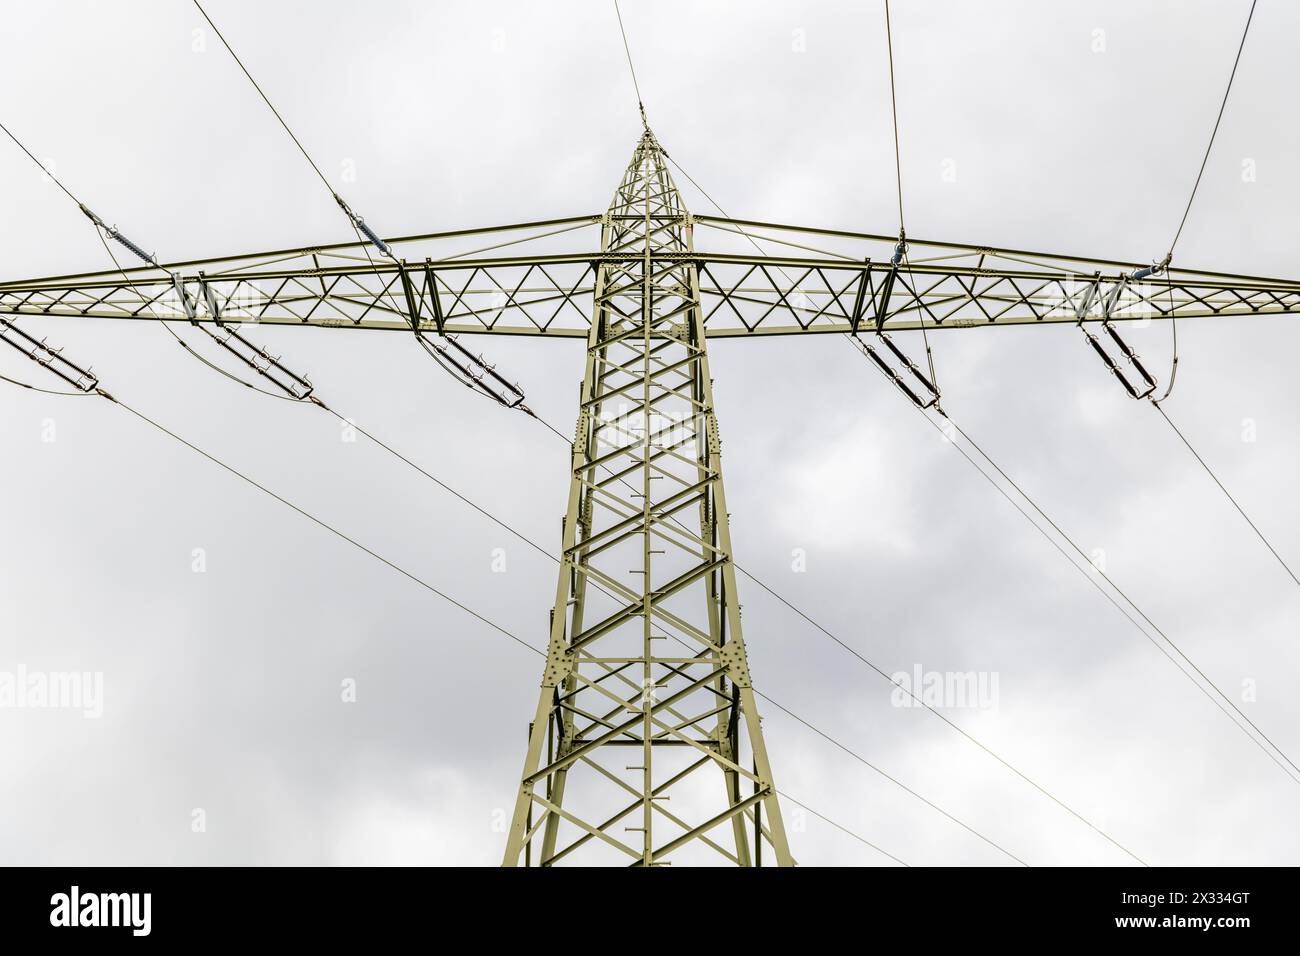 piegare la linea elettrica aerea per l'elettricità fotografata dal basso nella sezione sottostante e sui lati di fronte a un cielo grigio nuvoloso Foto Stock